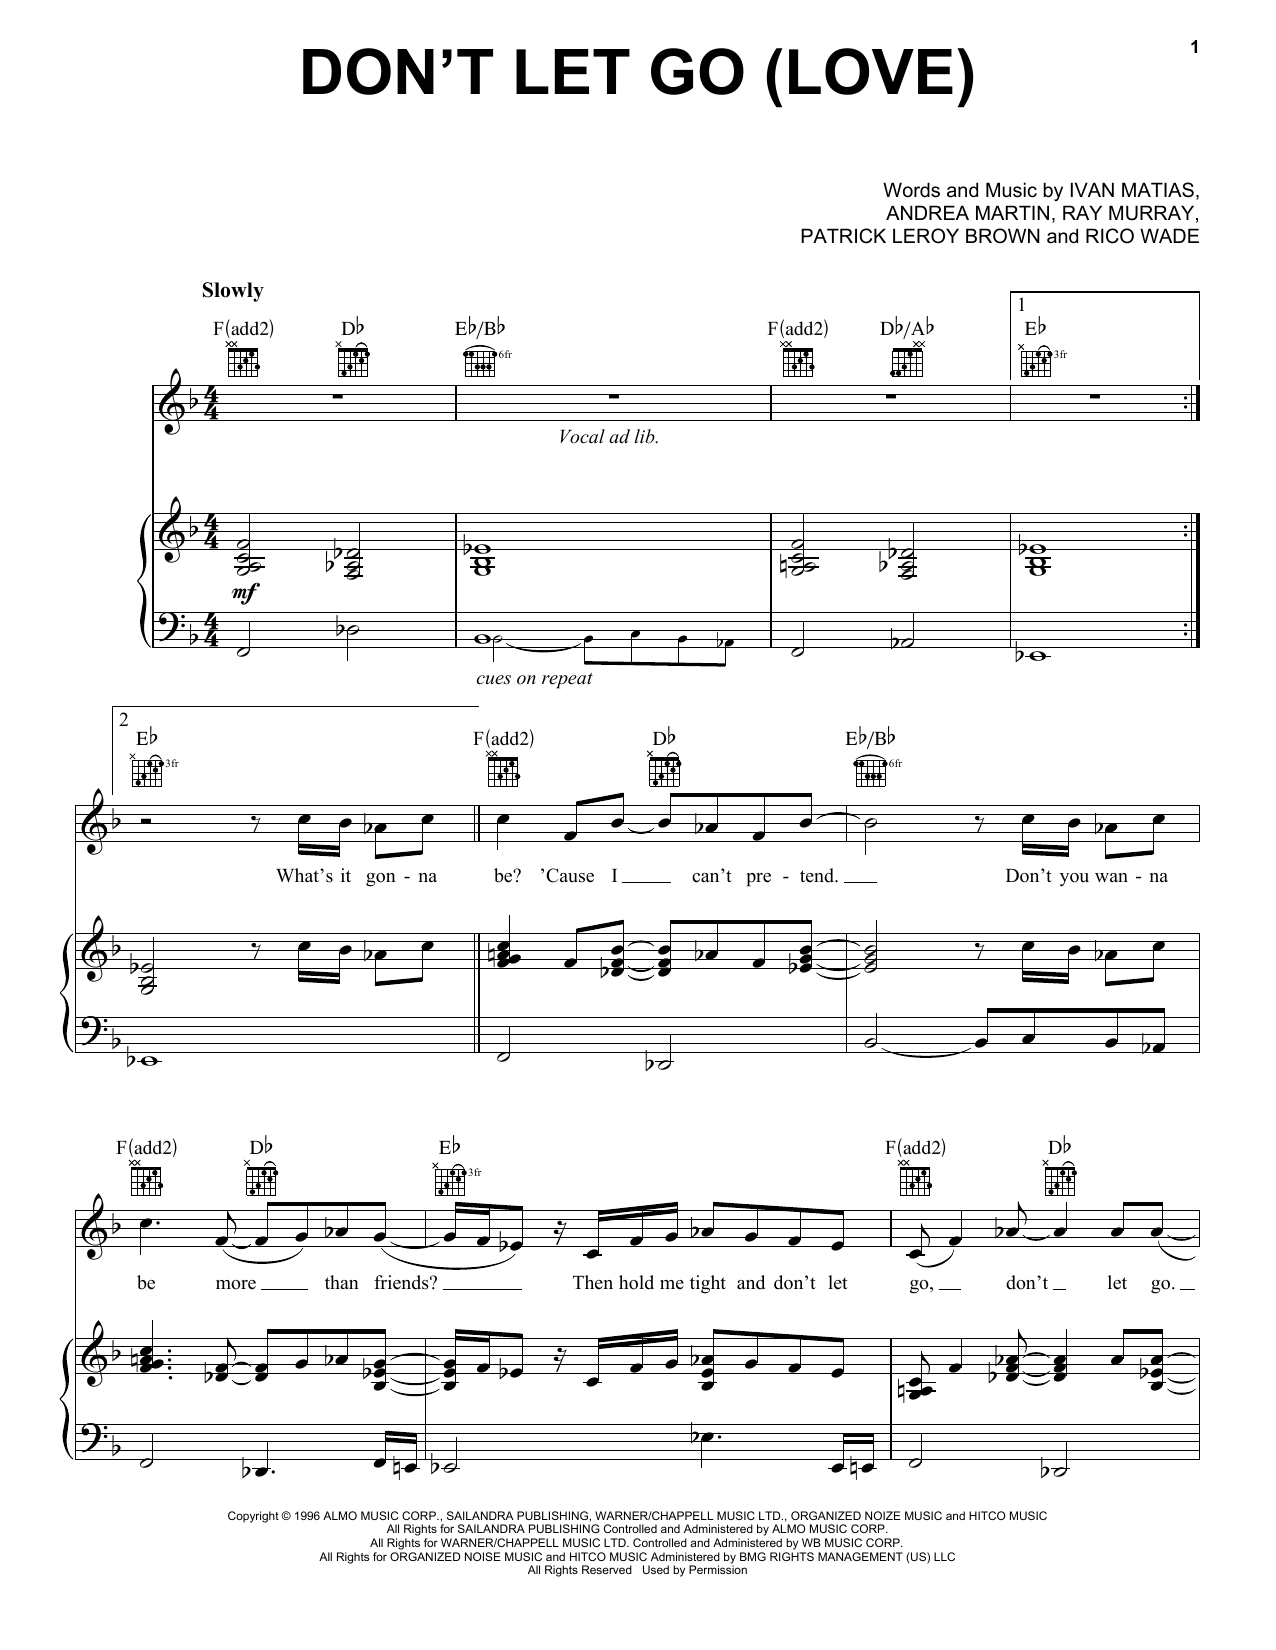 En Vogue Don't Let Go (Love) Sheet Music Notes & Chords for Lyrics & Chords - Download or Print PDF